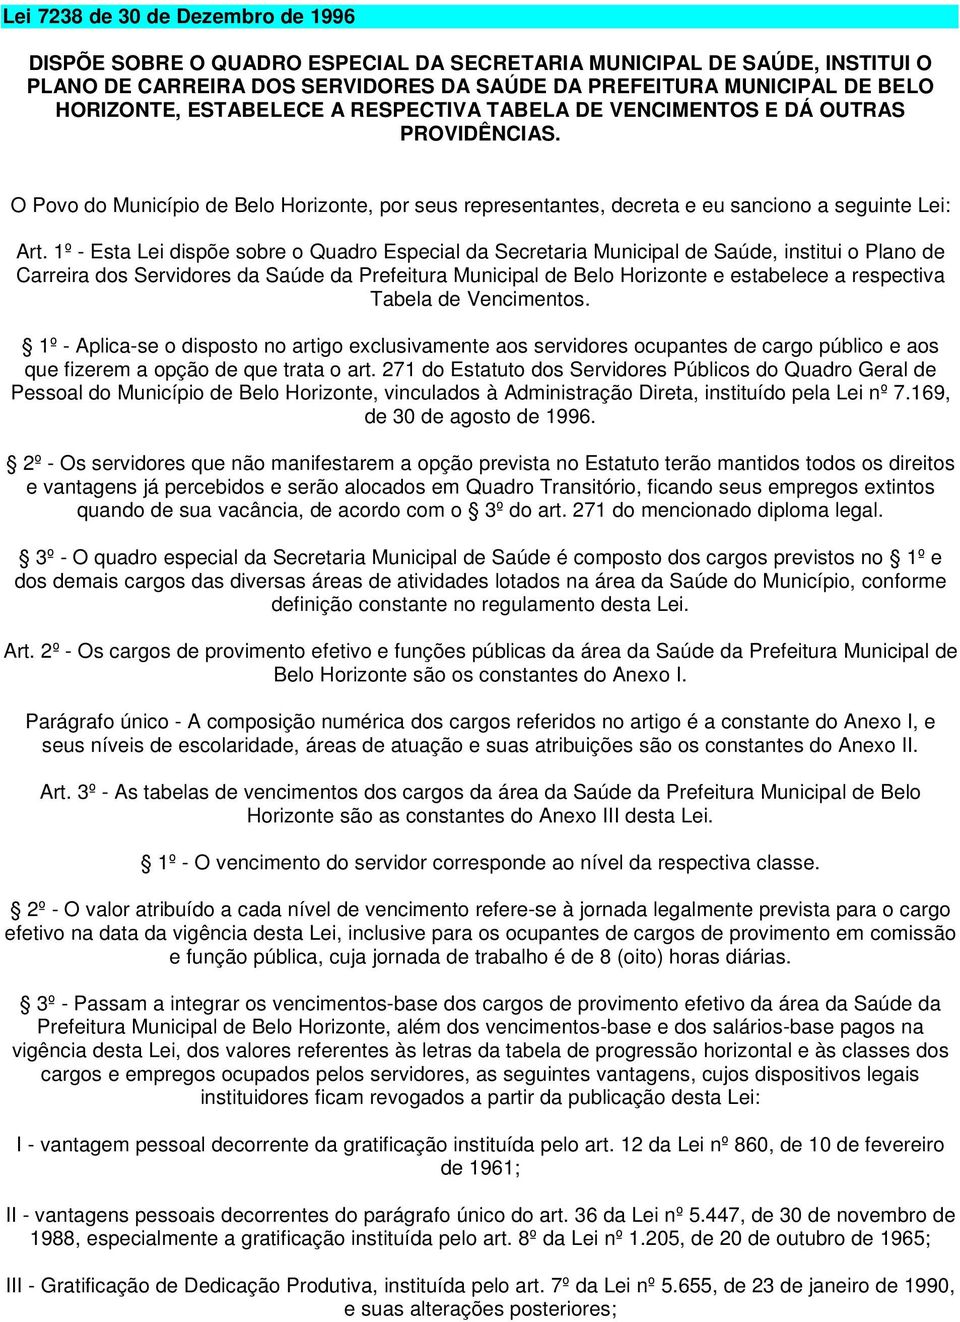 1º - Esta Lei dispõe sobre o Quadro Especial da Secretaria Municipal de Saúde, institui o Plano de Carreira dos Servidores da Saúde da Prefeitura Municipal de Belo Horizonte e estabelece a respectiva